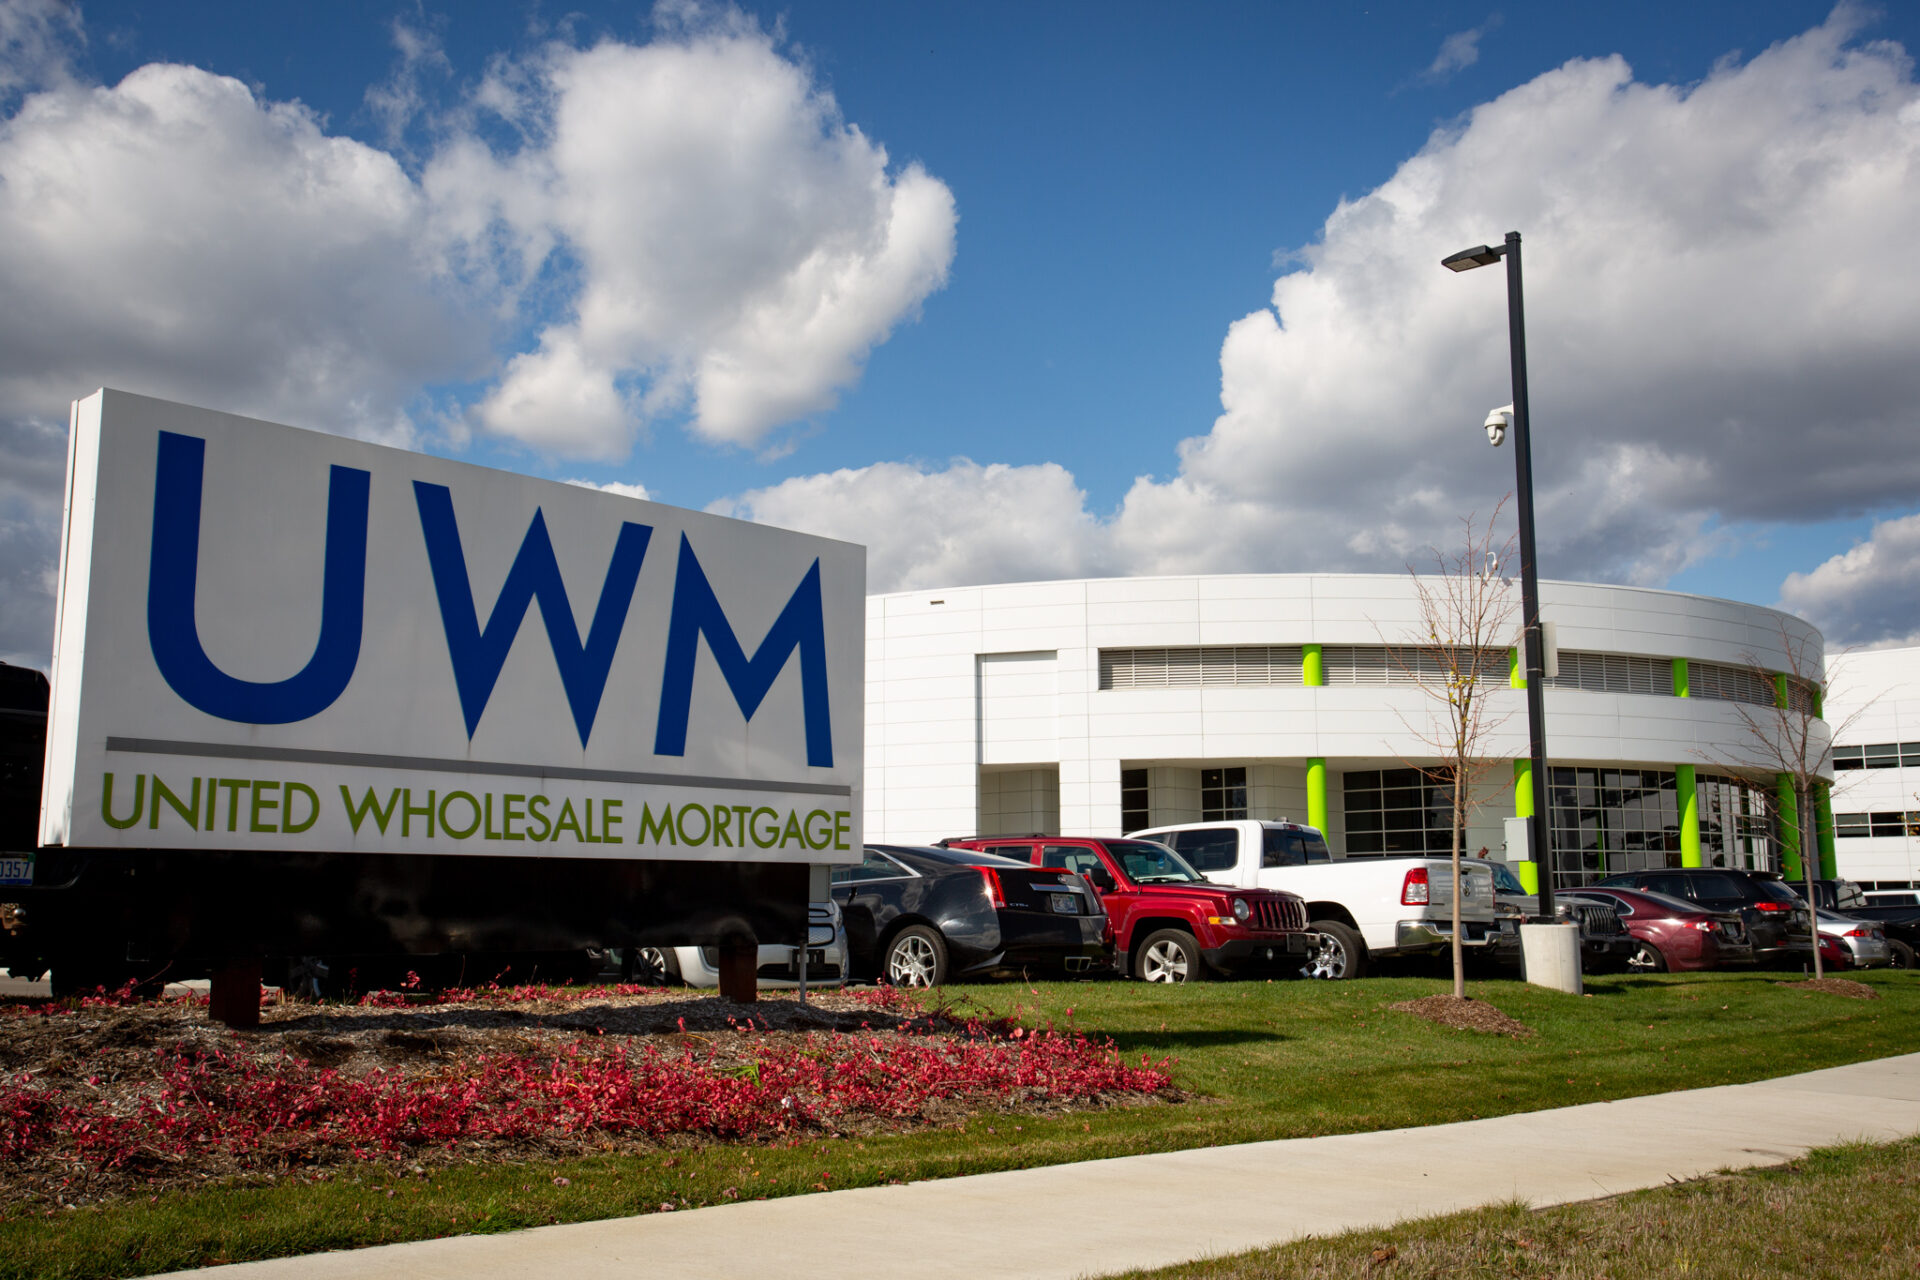 Remote Work In Lending: Are UWM Employees Being Unreasonable?